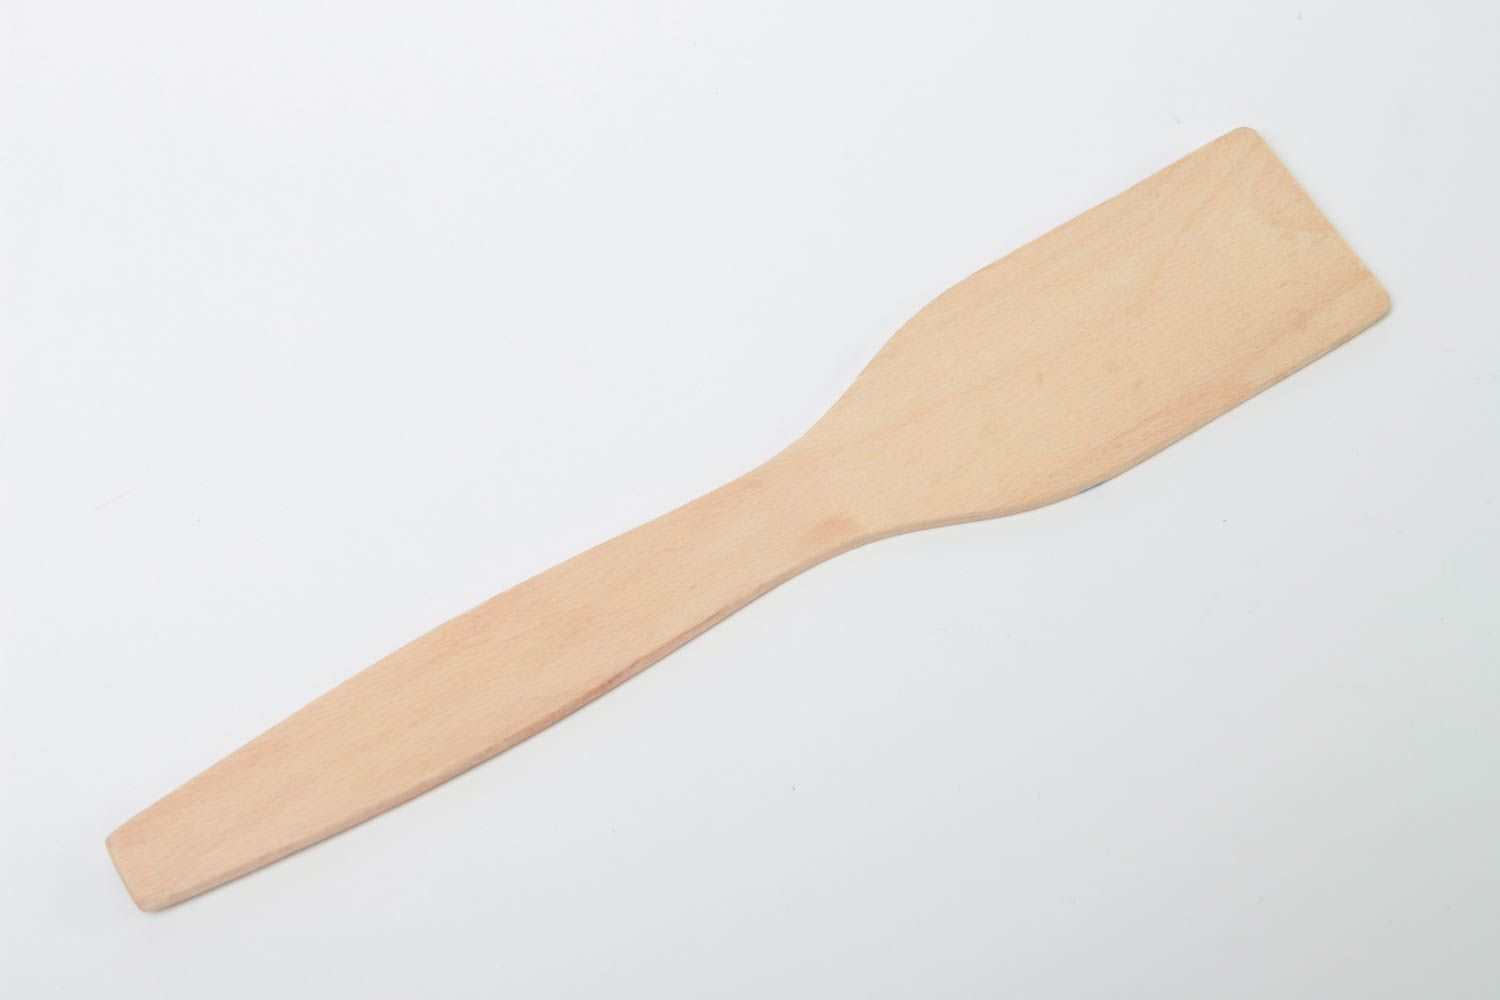 Decorative handmade wooden spatula kitchen accessories designs gift ideas photo 4